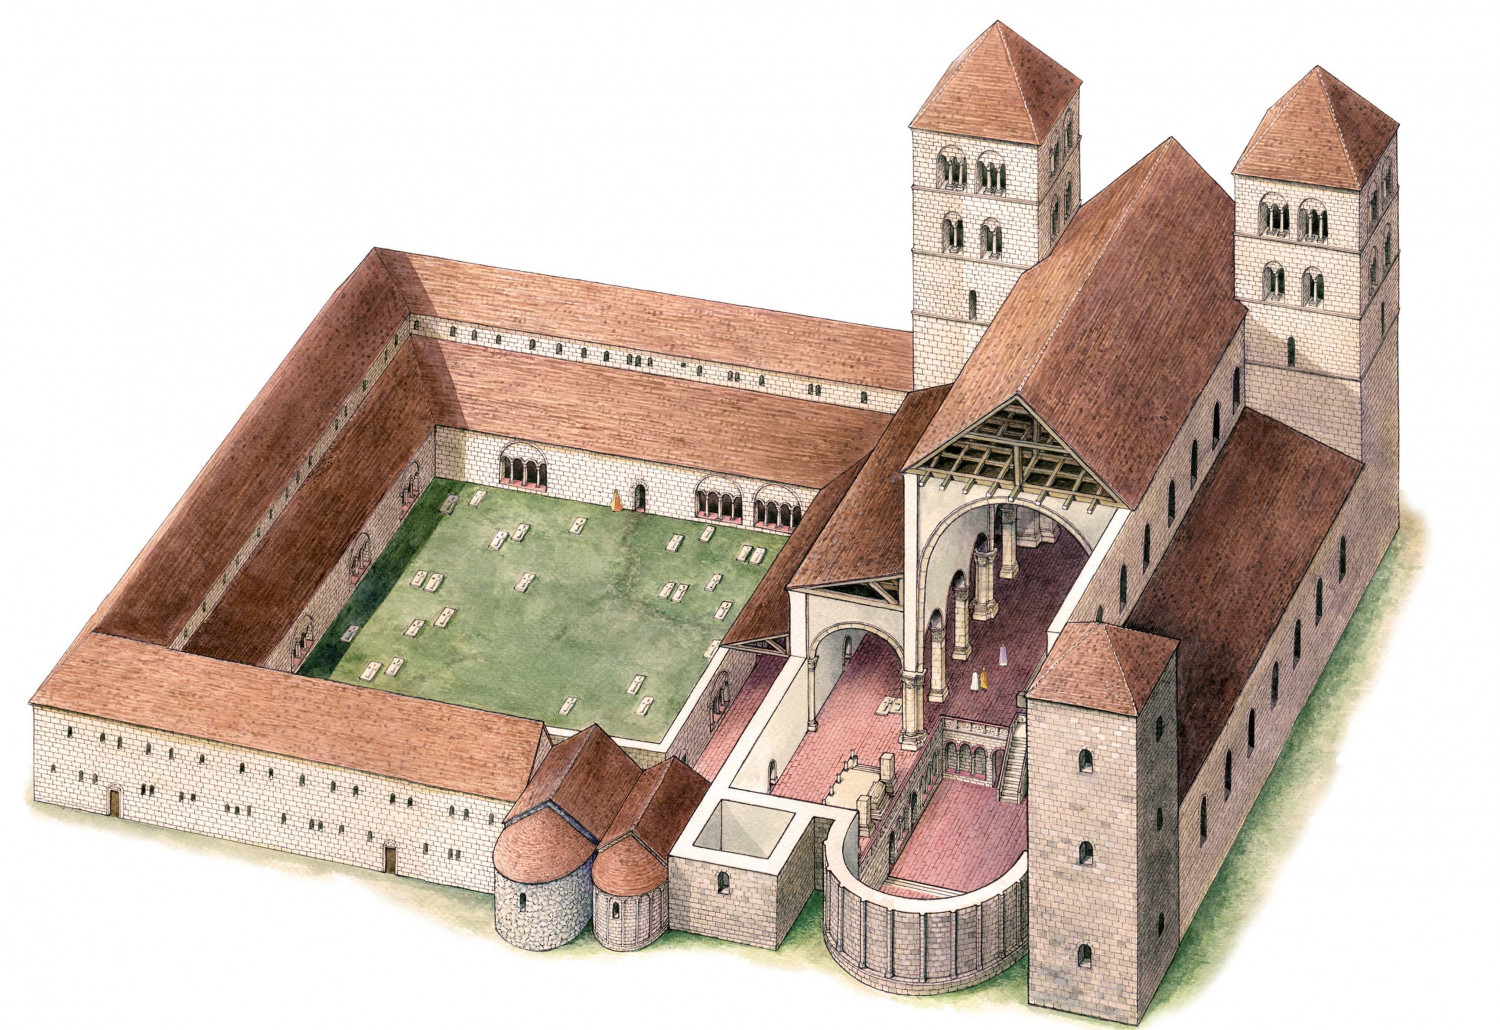 Tòa thánh đường quan trọng nhất của nước Hung ở TP. Székesfehérvár, nơi đăng quang và yên nghỉ của các quân vương thời Trung cổ, đã bị phá hủy hoàn toàn trong chiến tranh với Thổ Nhĩ Kỳ